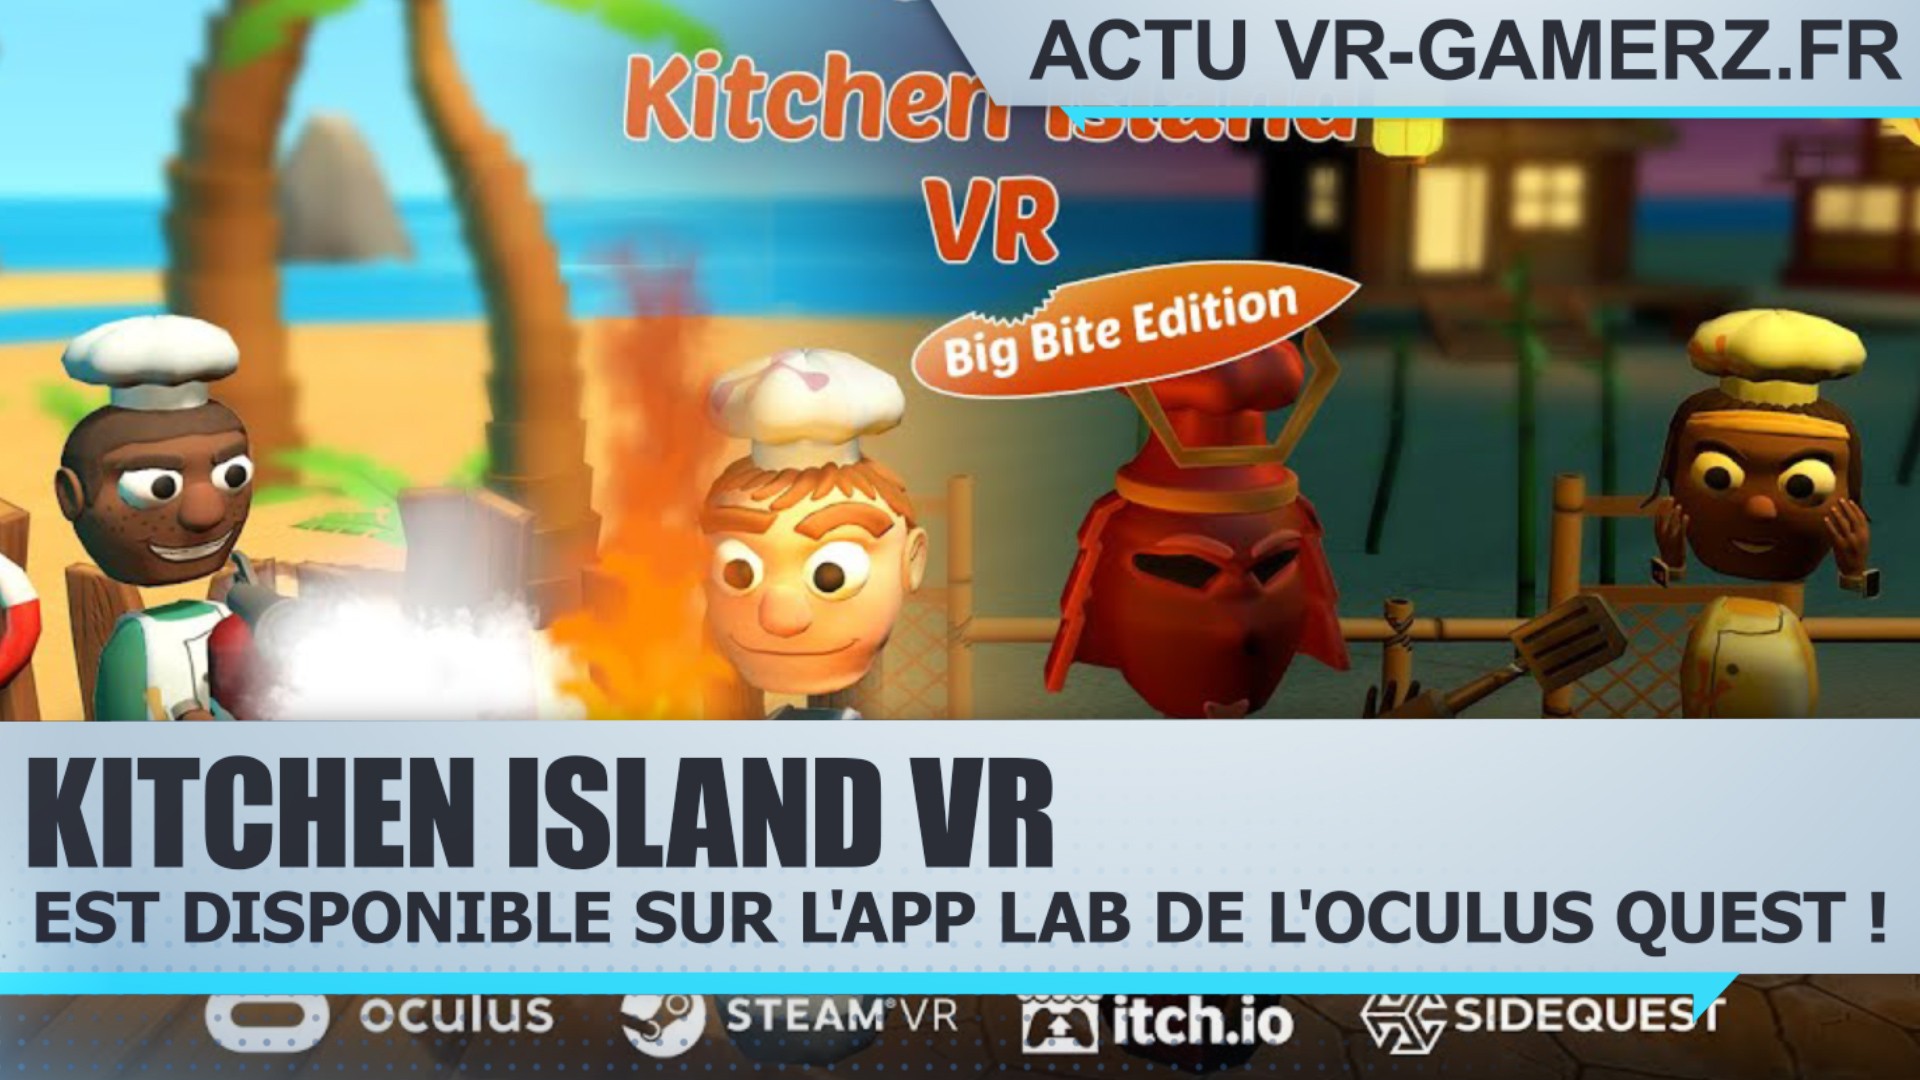 Kitchen Island VR est disponible sur l’app lab de l’Oculus quest !